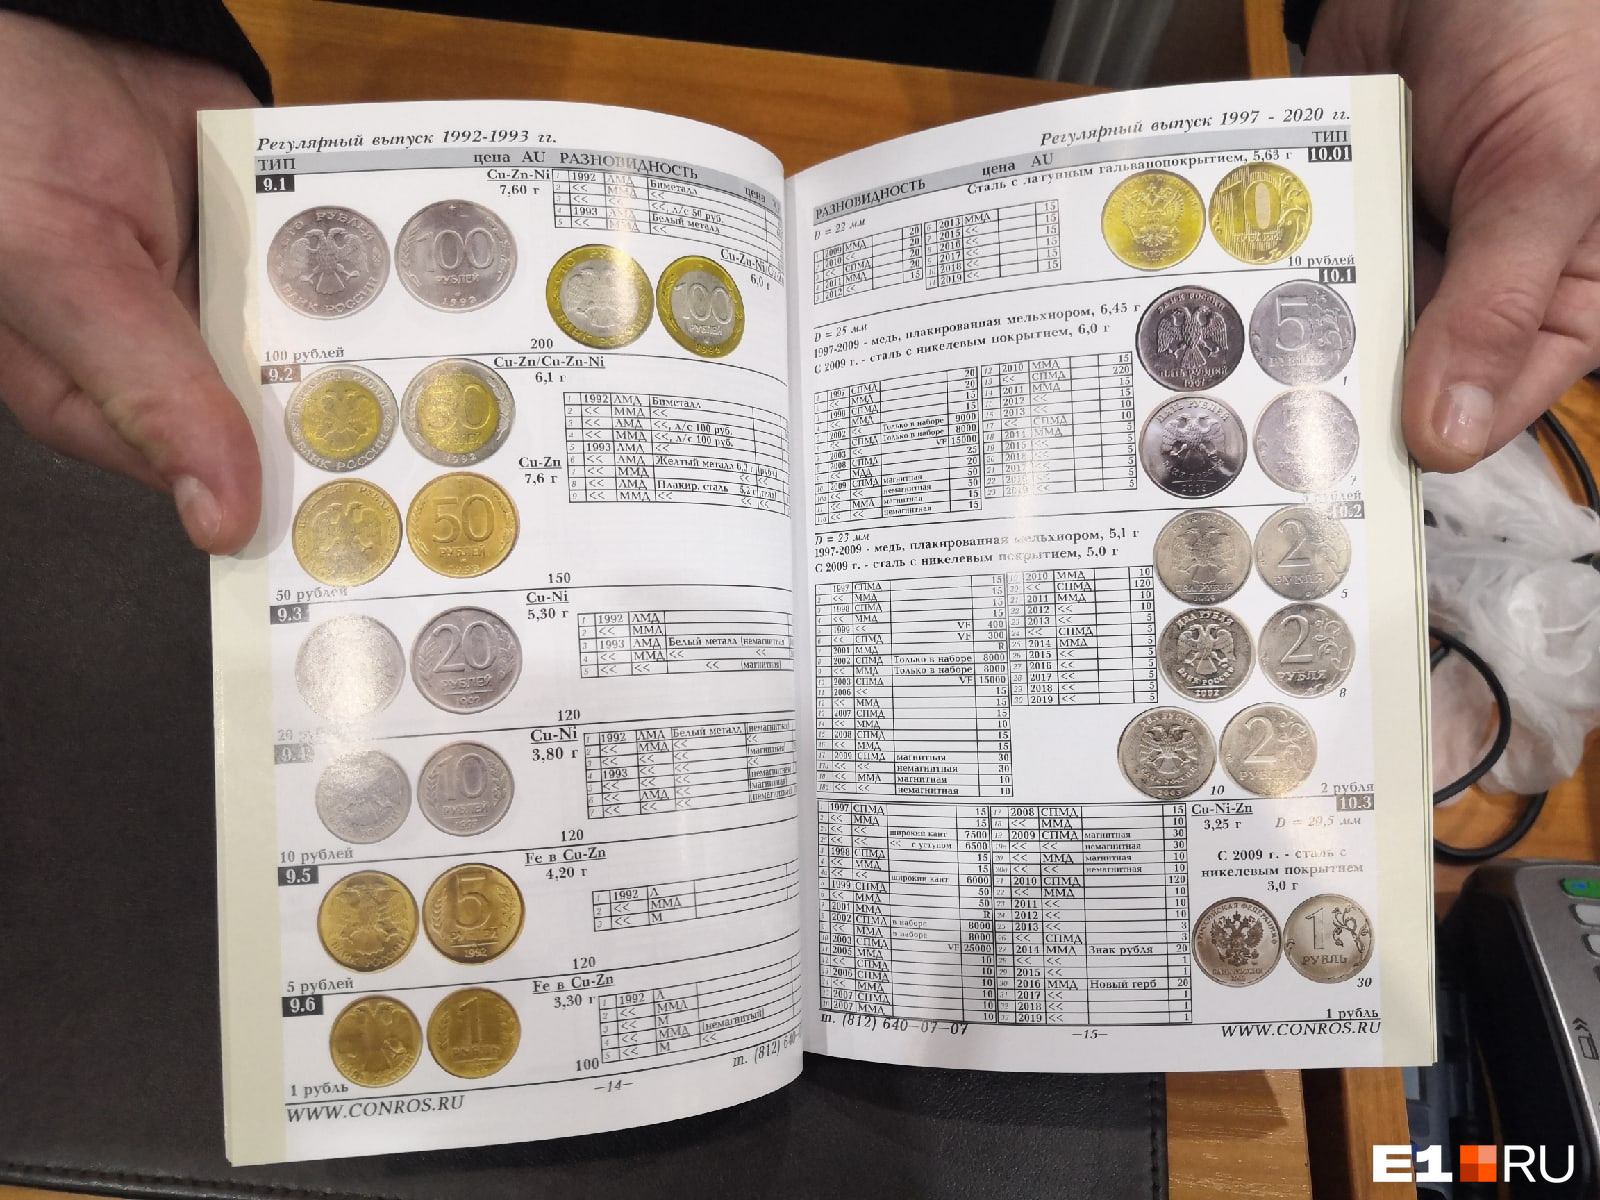 Существуют каталоги, в которых перечислены все виды монет и их примерная стоимость